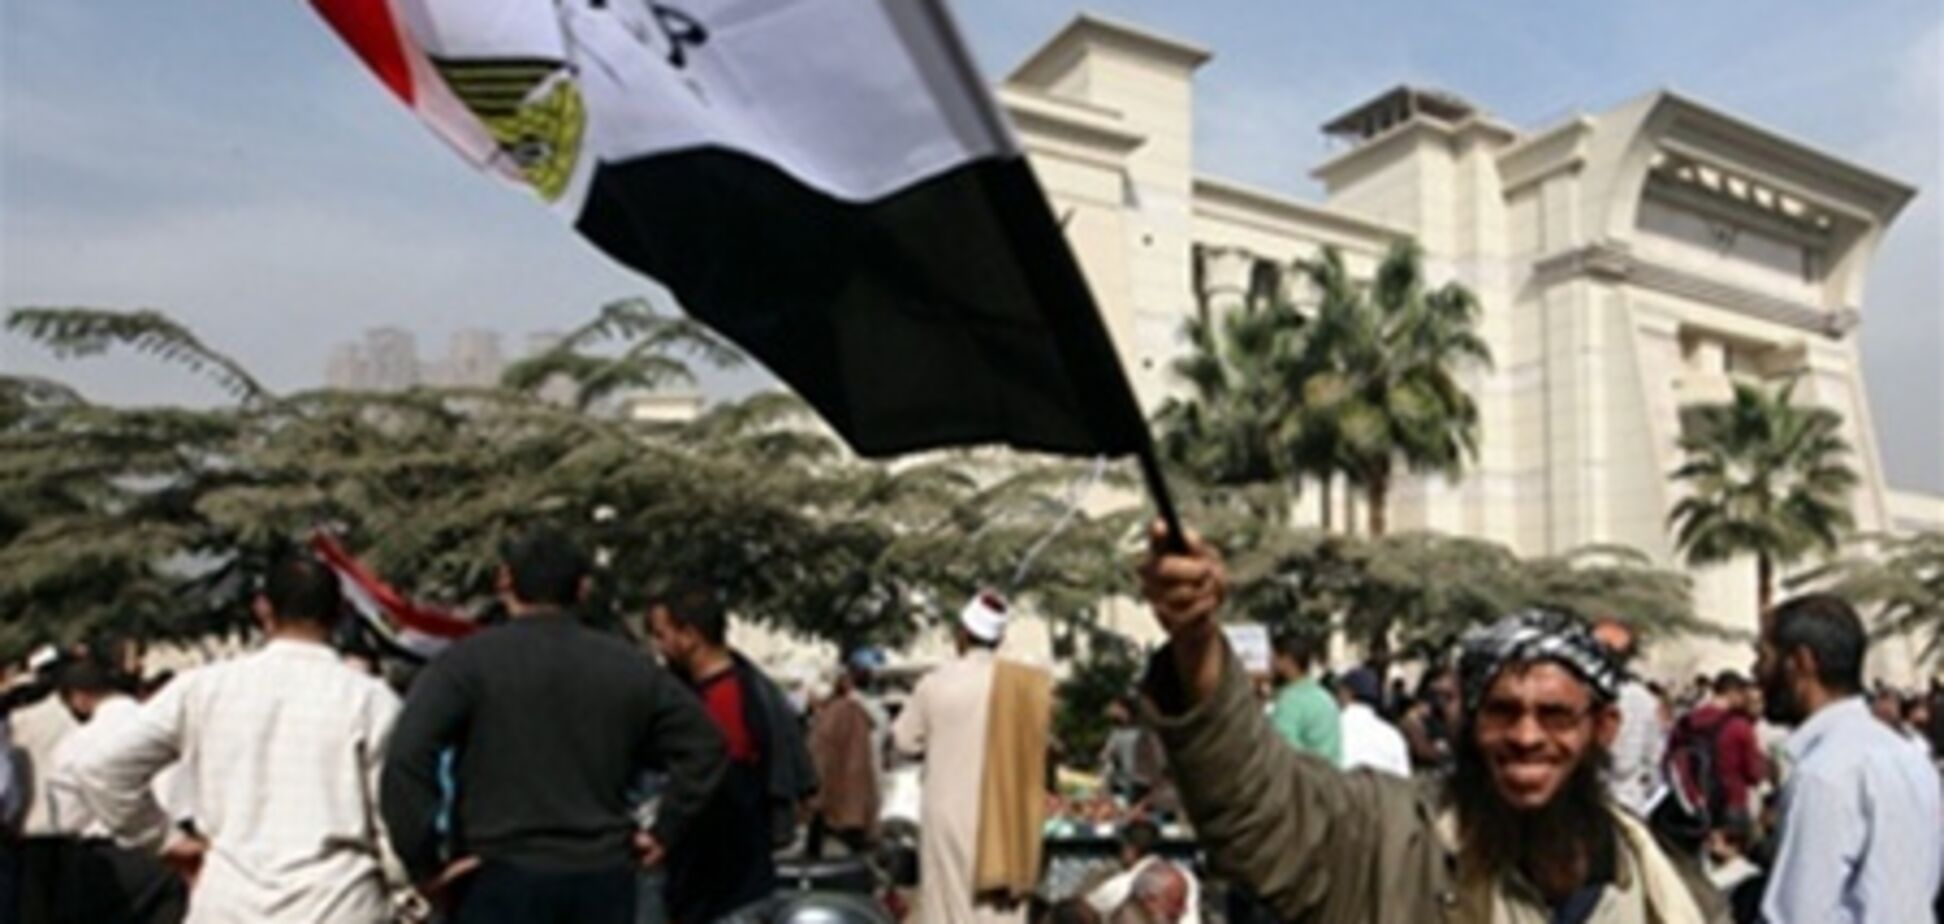 В Египте спустя 85 лет зарегистрировали 'Братьев-мусульман'